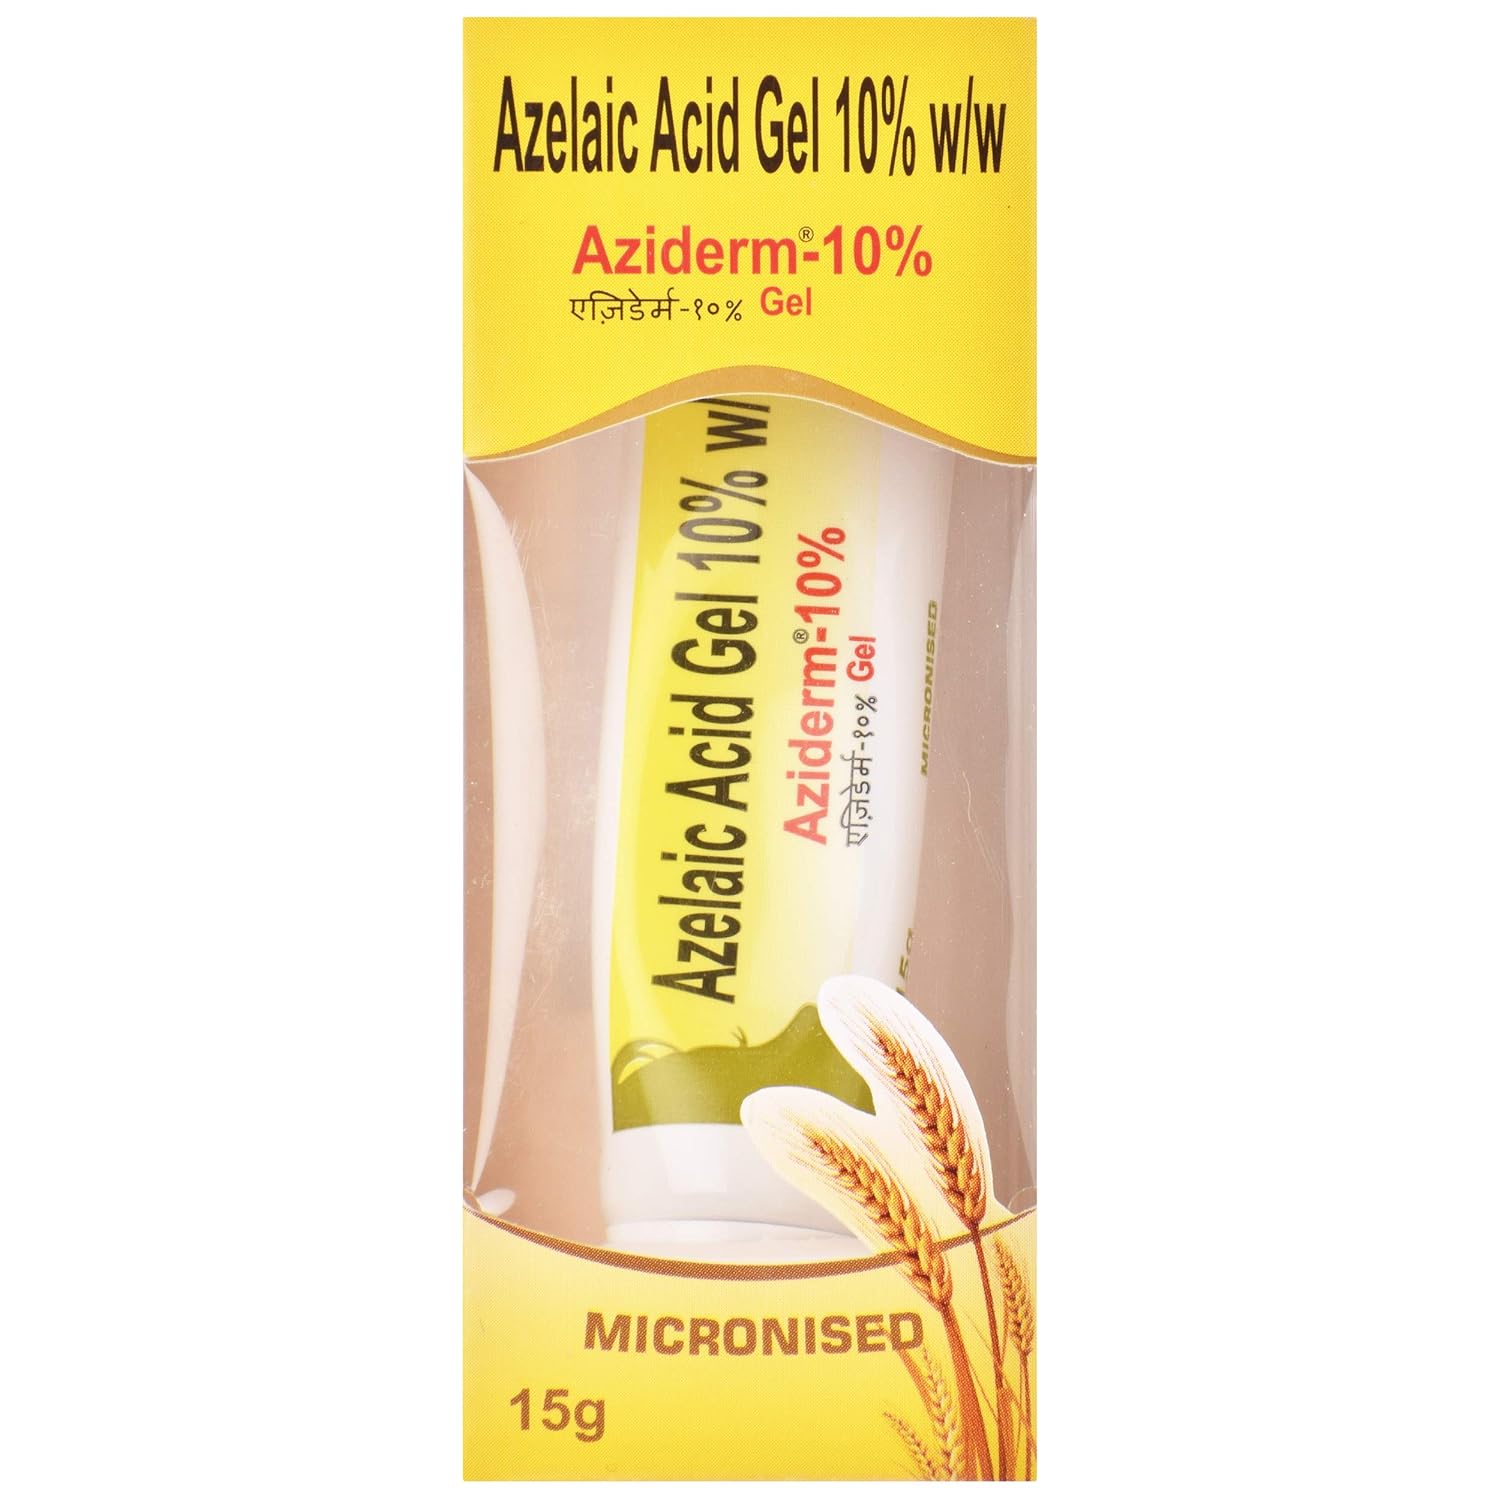 Aziderm 10% gel (15gm)